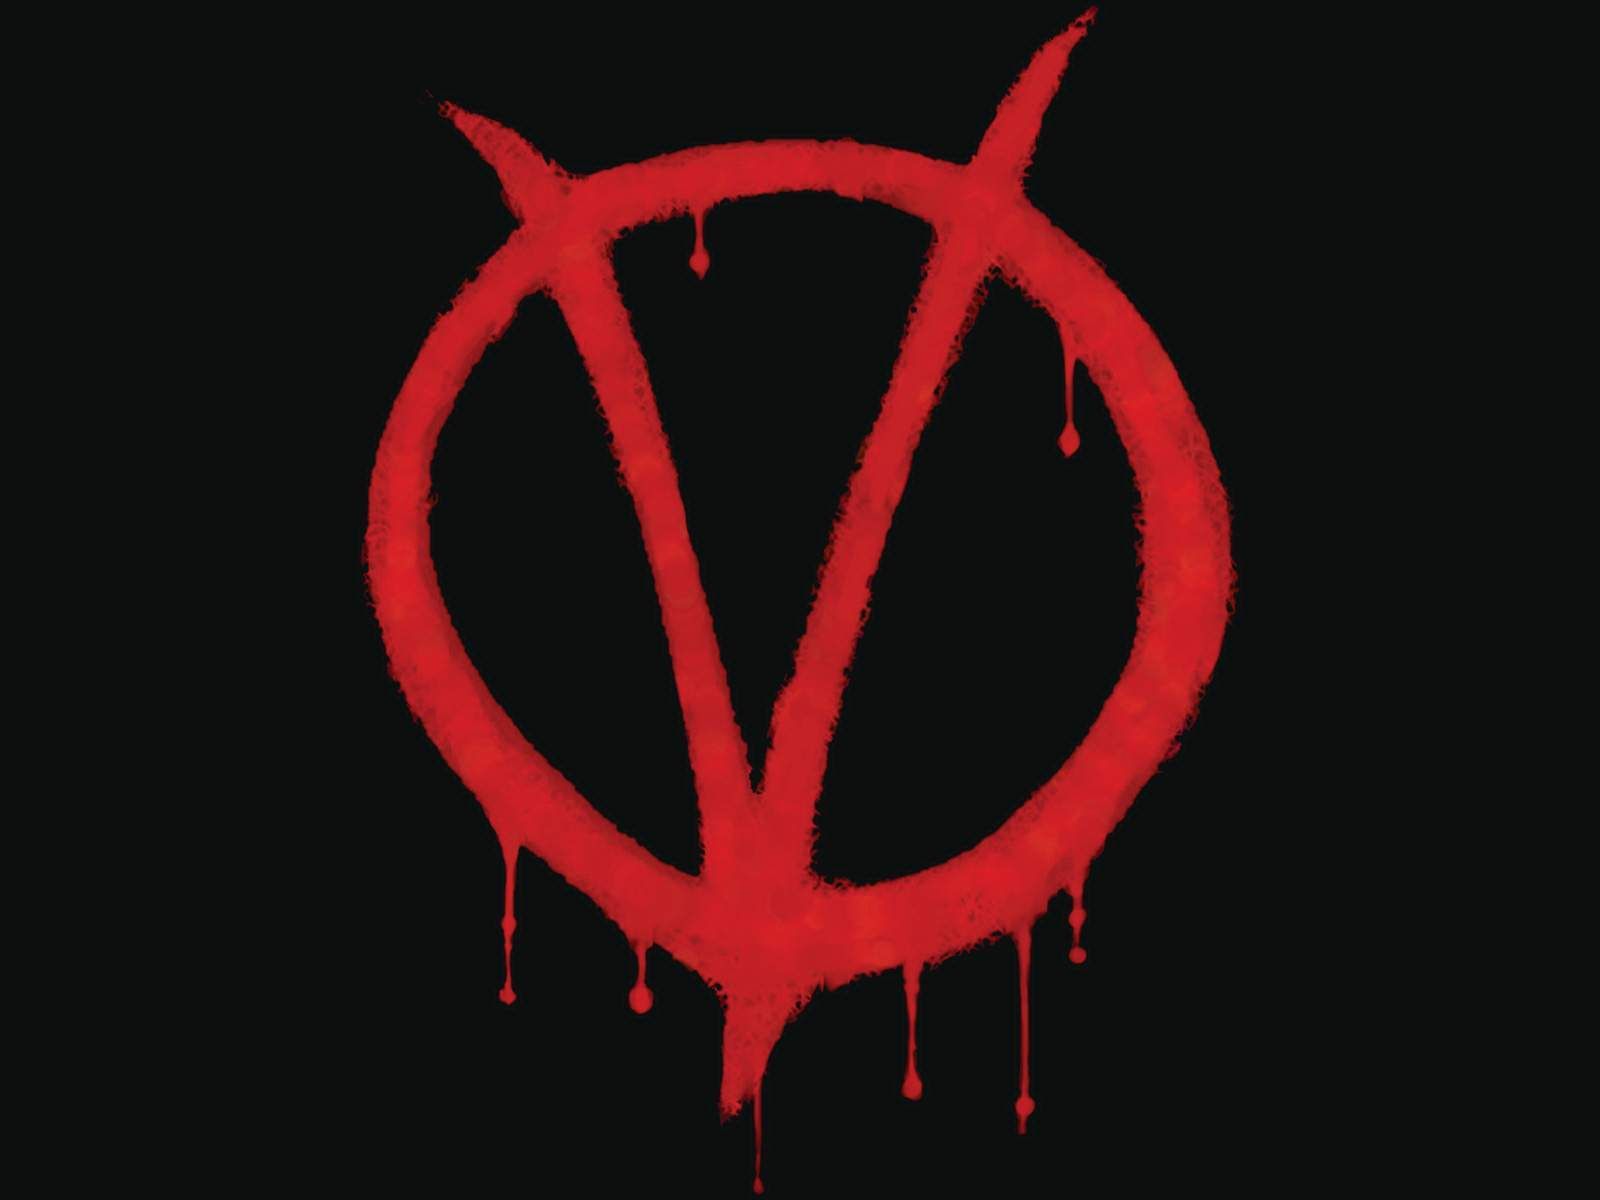 V for Vendetta Wallpaper - 1280x1024 Desktop